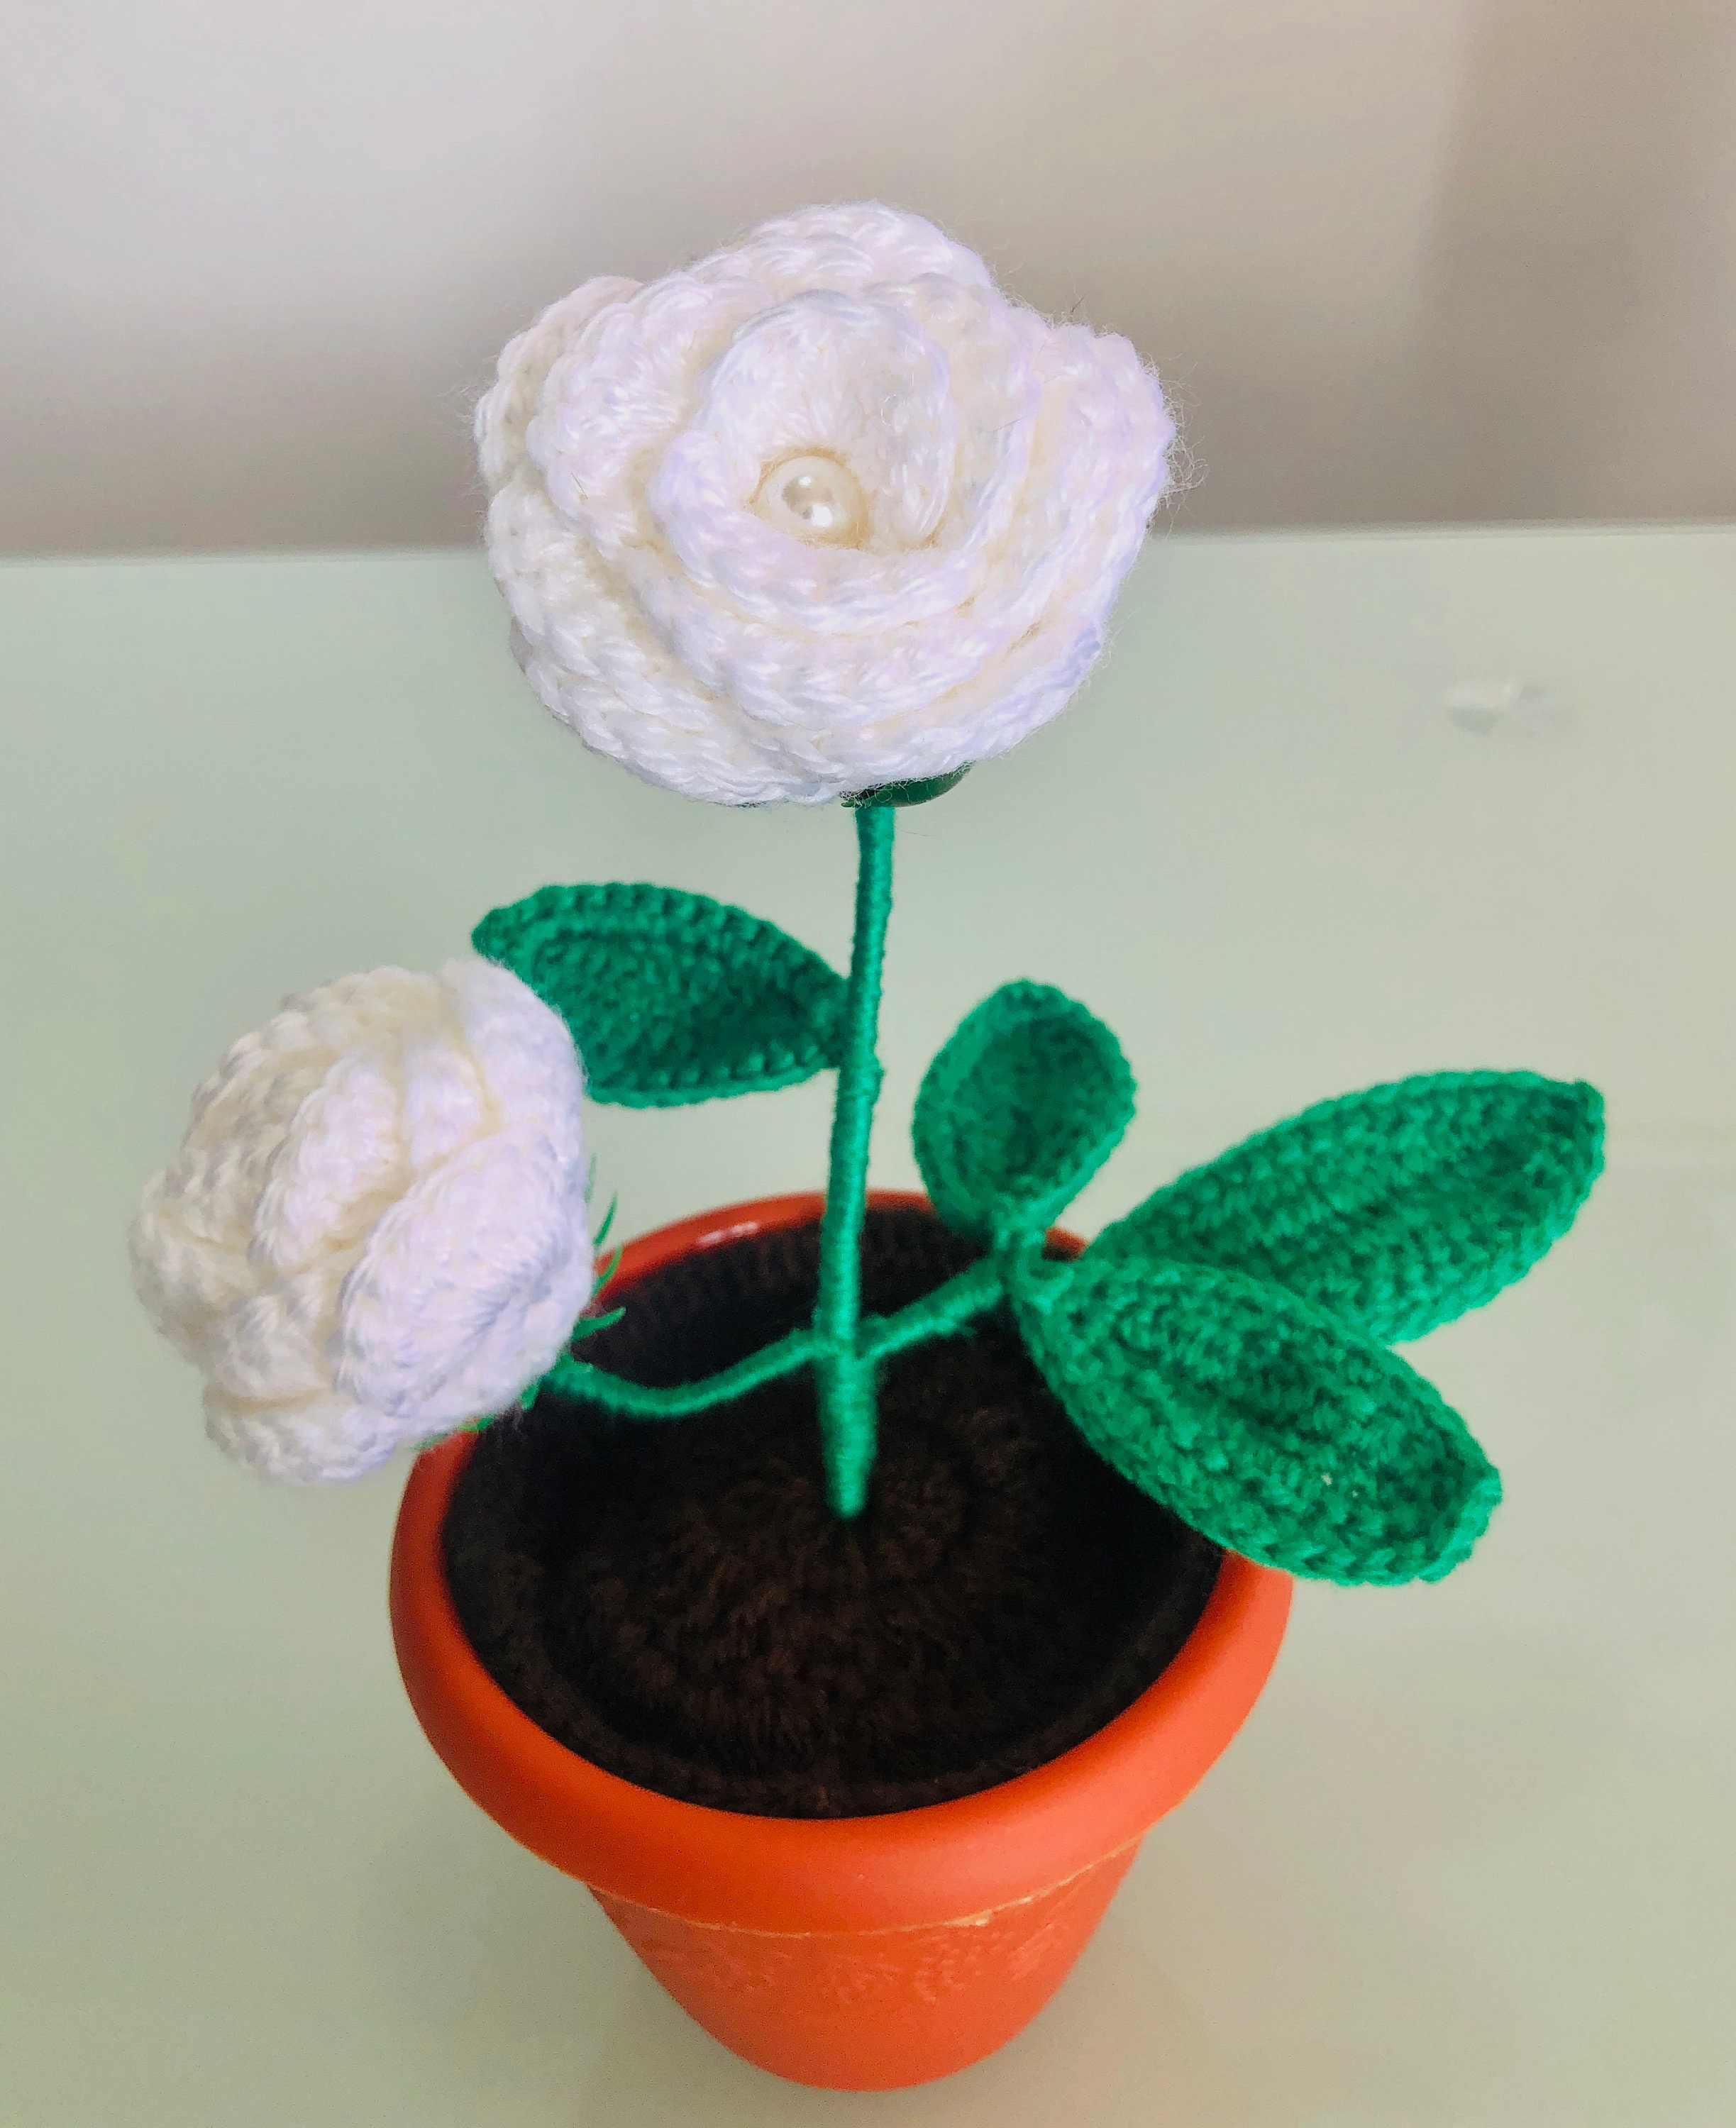 Beginner's Diy Crochet Flower Kit, Romantic Knitted Rose Pot